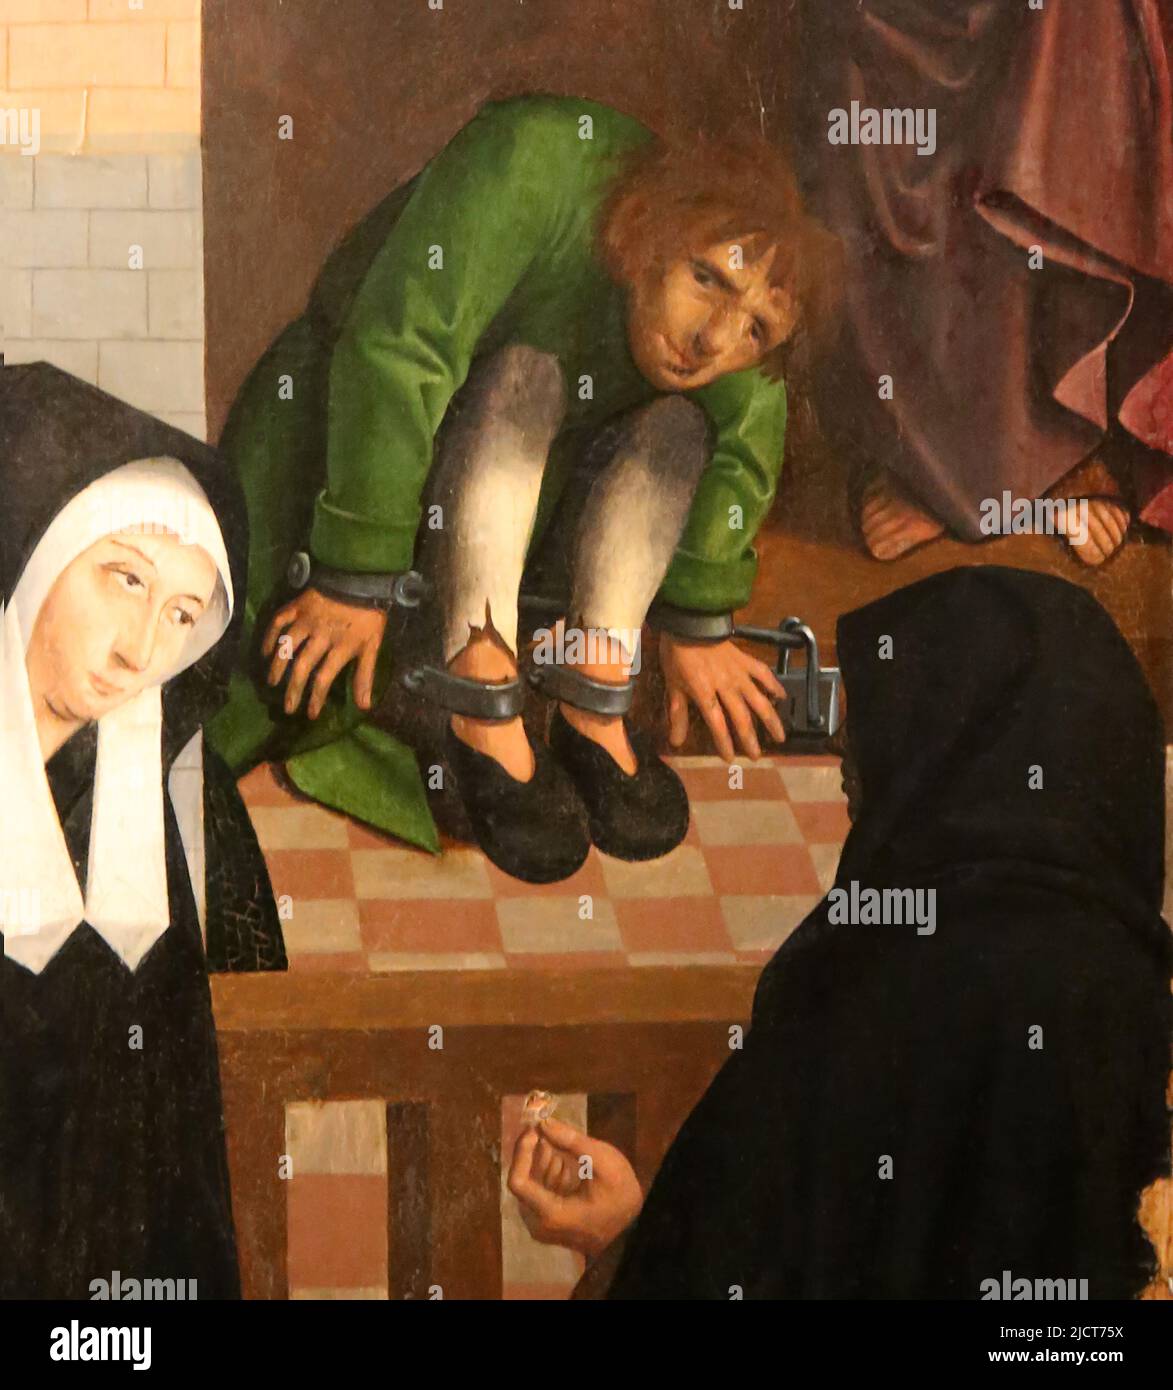 Die sieben Werke der Barmherzigkeit. Meister von Alkmaa, 1504. Öl auf der Platte. Detail eines der Paneele. Rijksmuseum. Amsterdam. Niederlande. Stockfoto